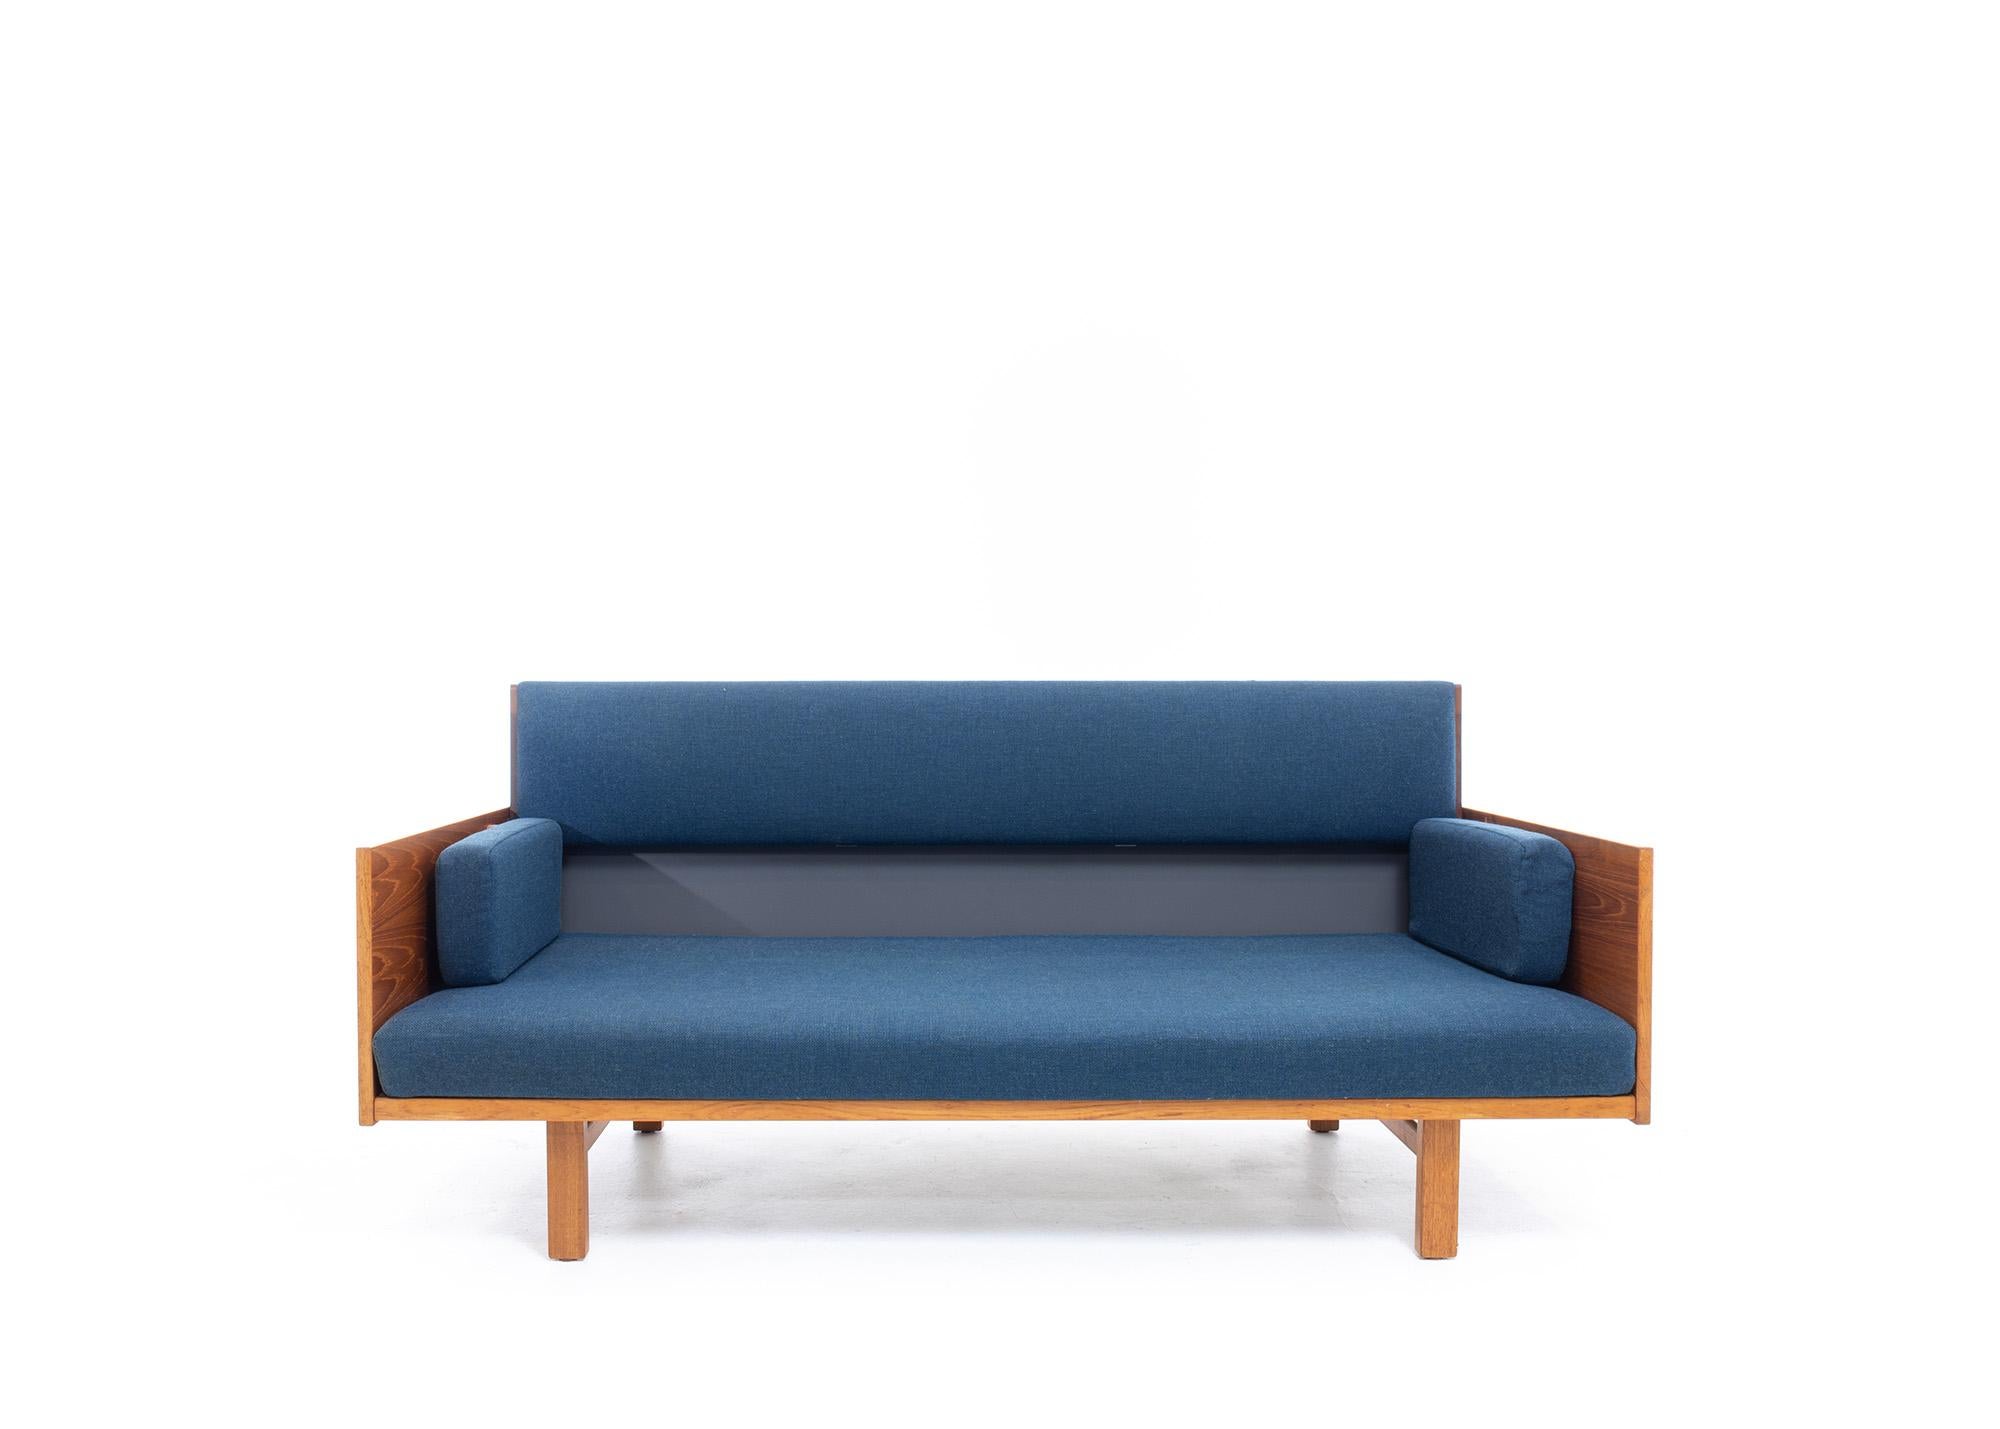 Voici le Teak GE-259 Adjustable Daybed/Sofa by Hans Wegner for Getama, un étonnant meuble moderne du milieu du siècle qui allie style et polyvalence.

Fabriqué à partir du meilleur bois de teck, ce lit de jour/canapé moderne du milieu du siècle